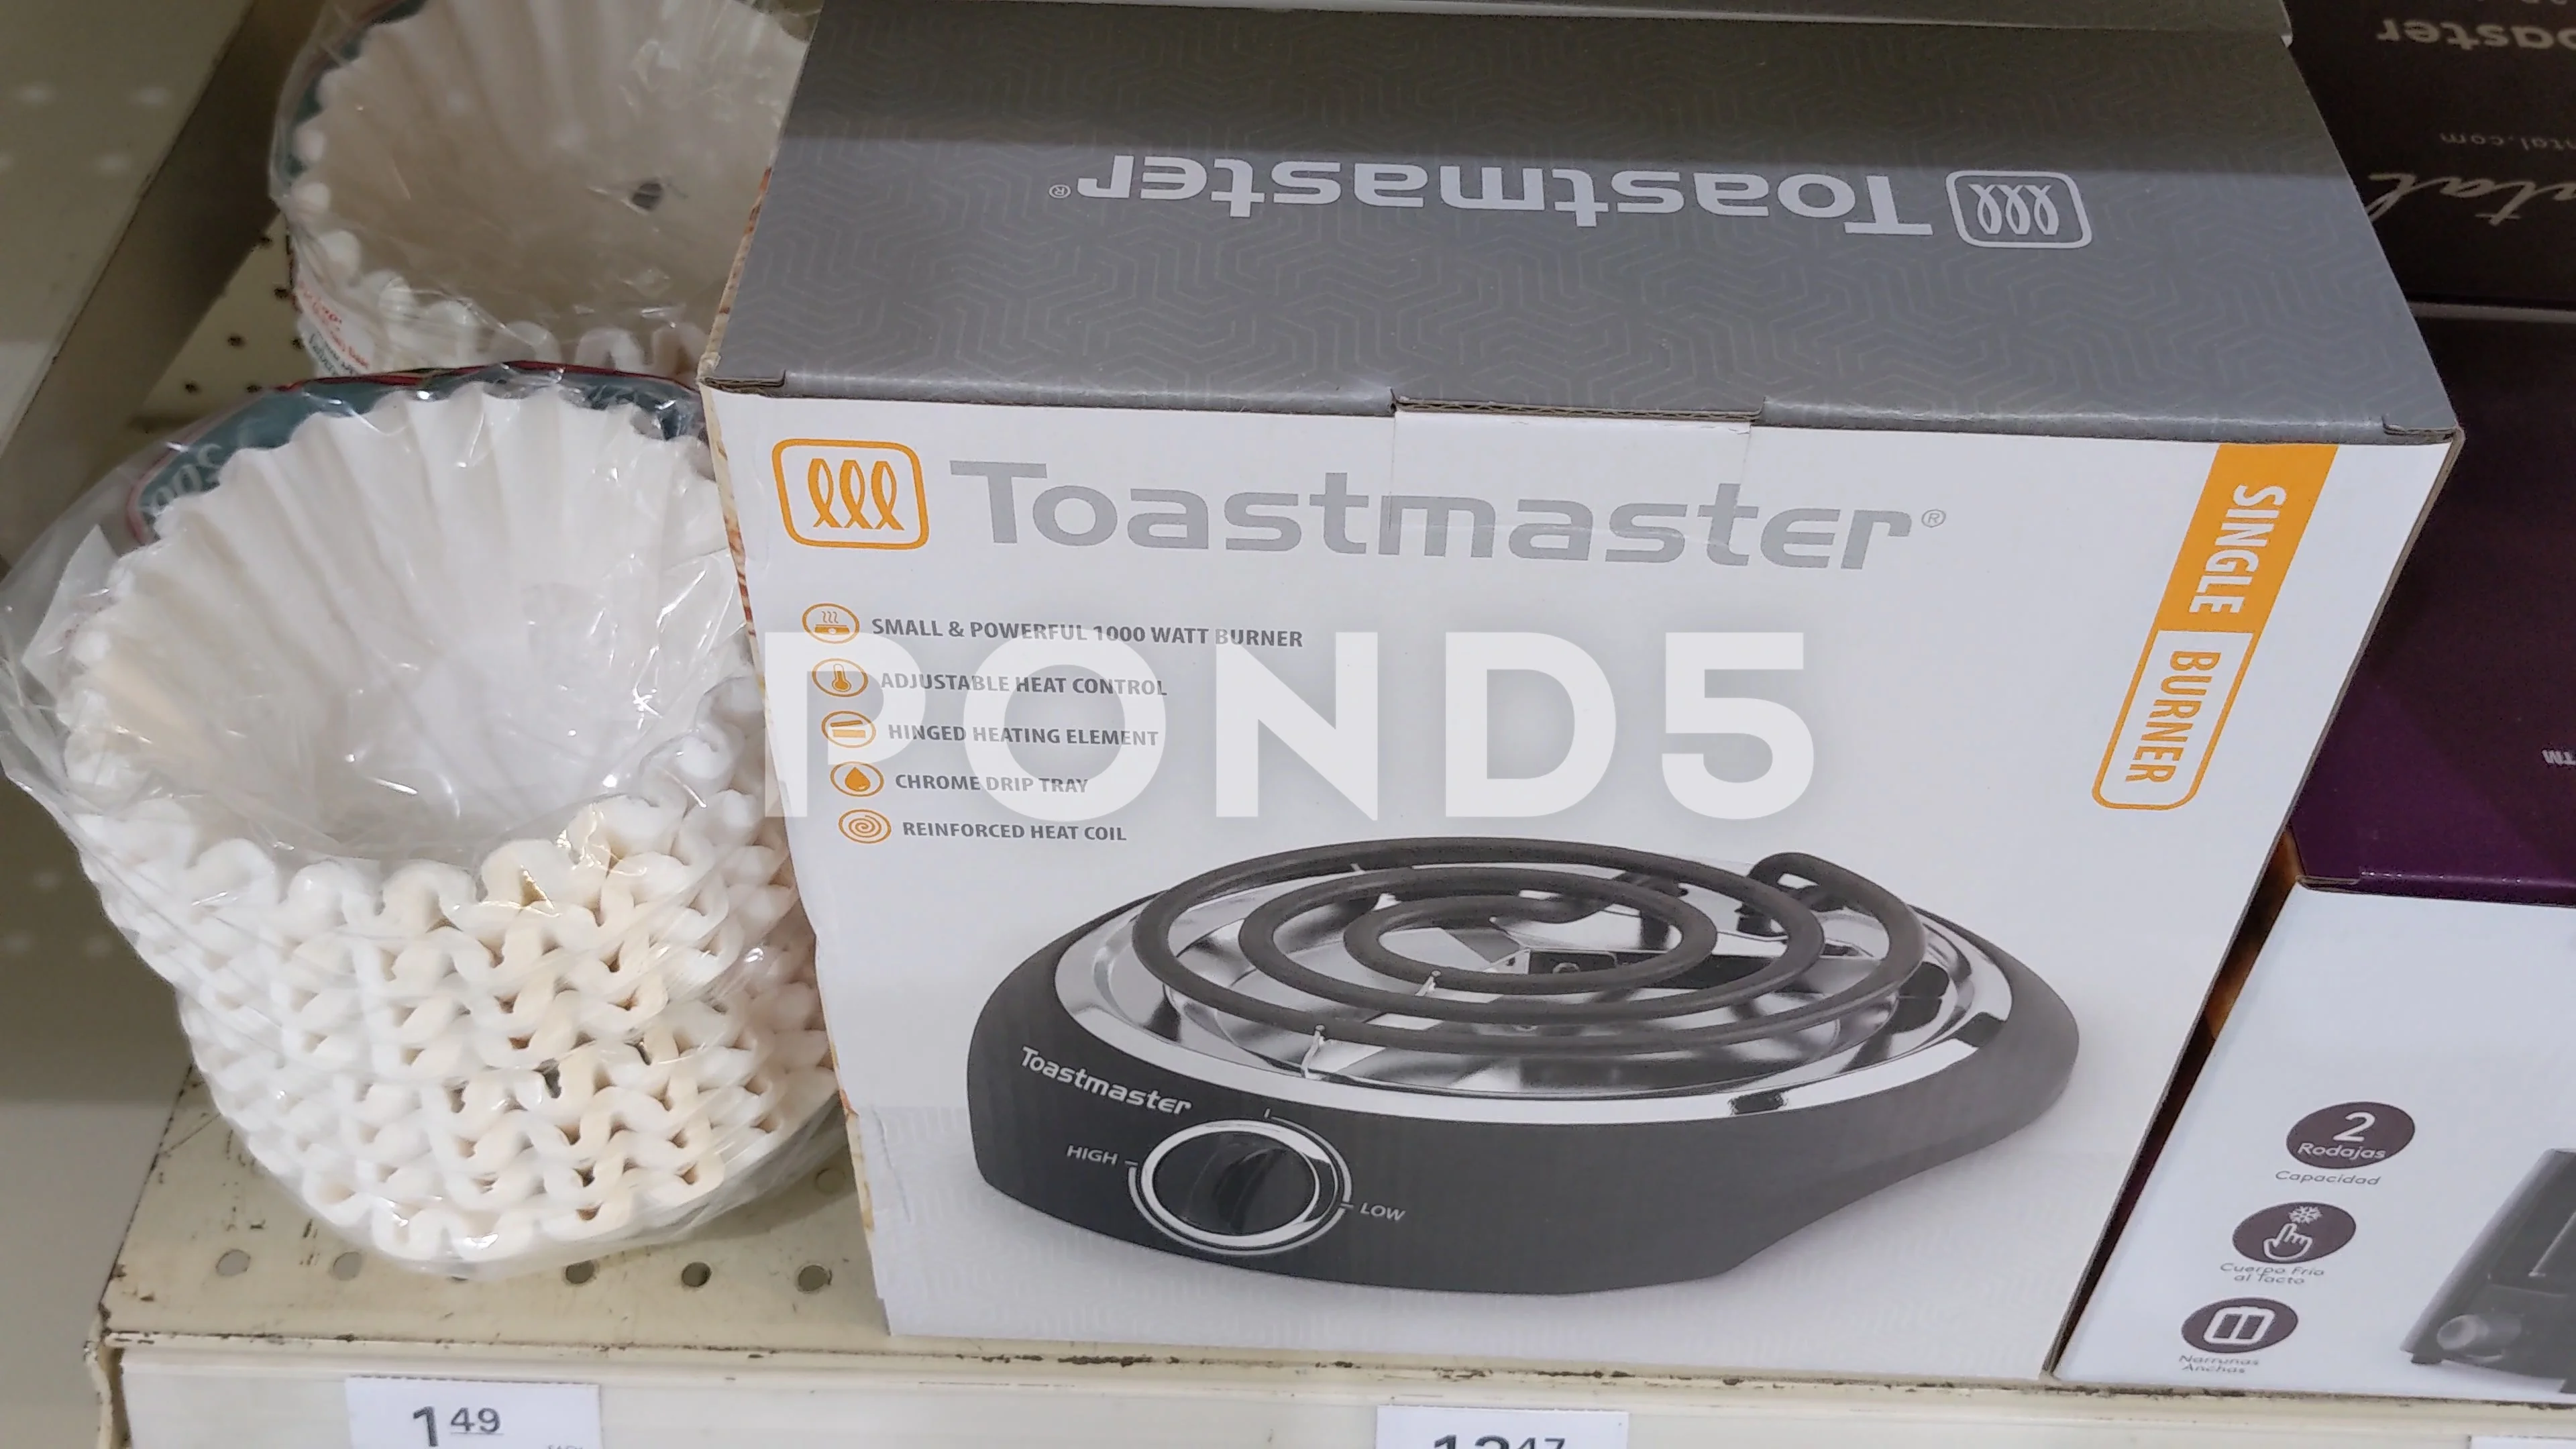 https://images.pond5.com/toastmaster-single-burner-157461738_prevstill.jpeg